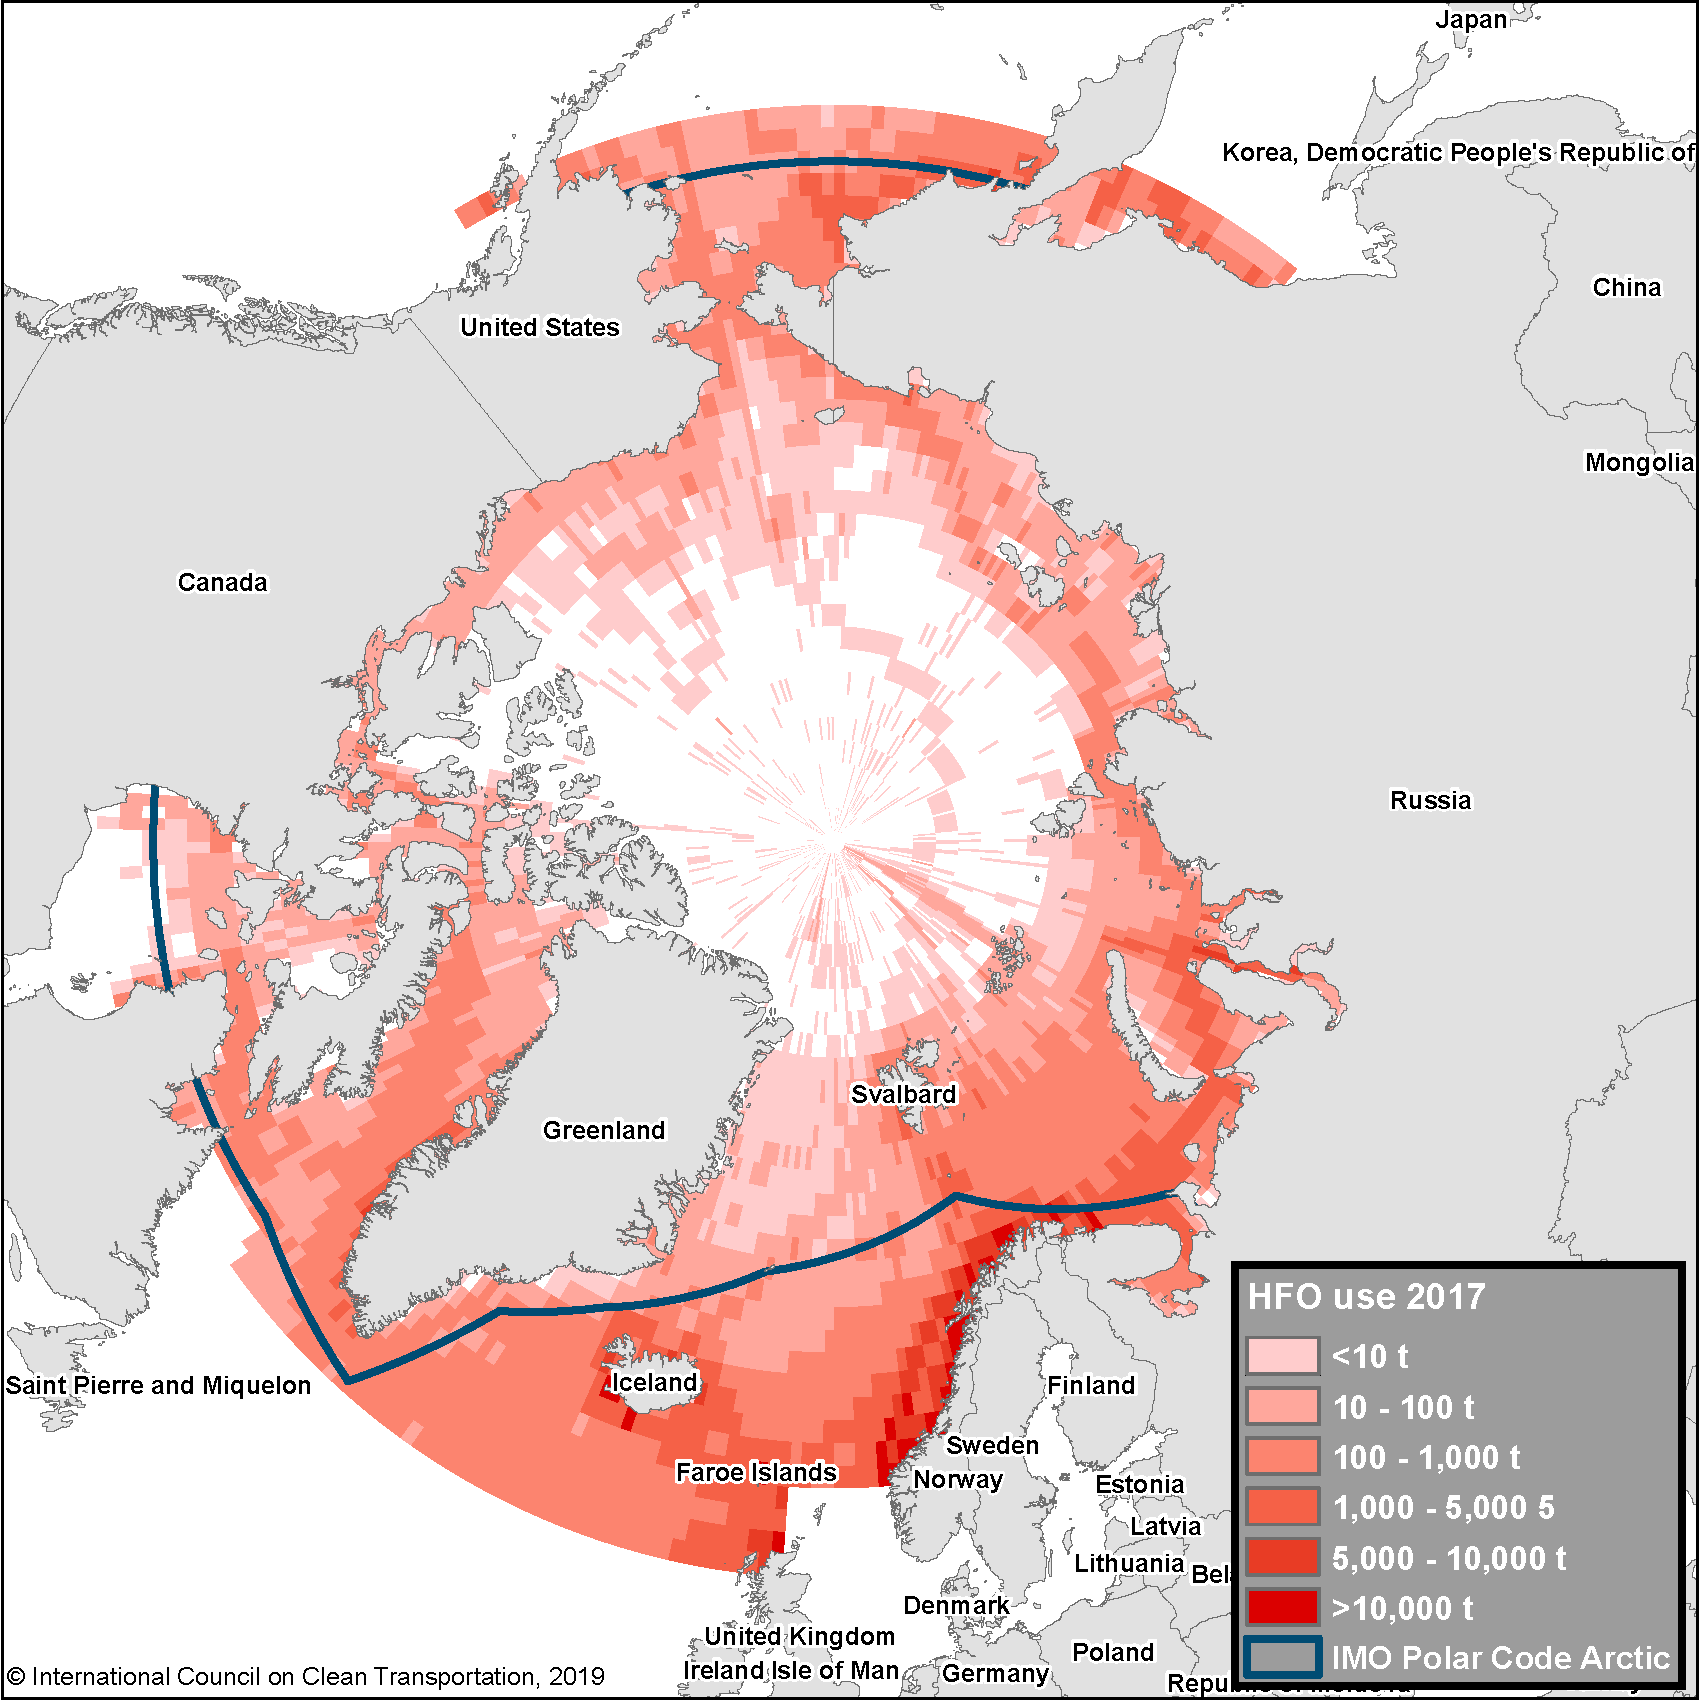 Figure 1. Arctic HFO use, 2017